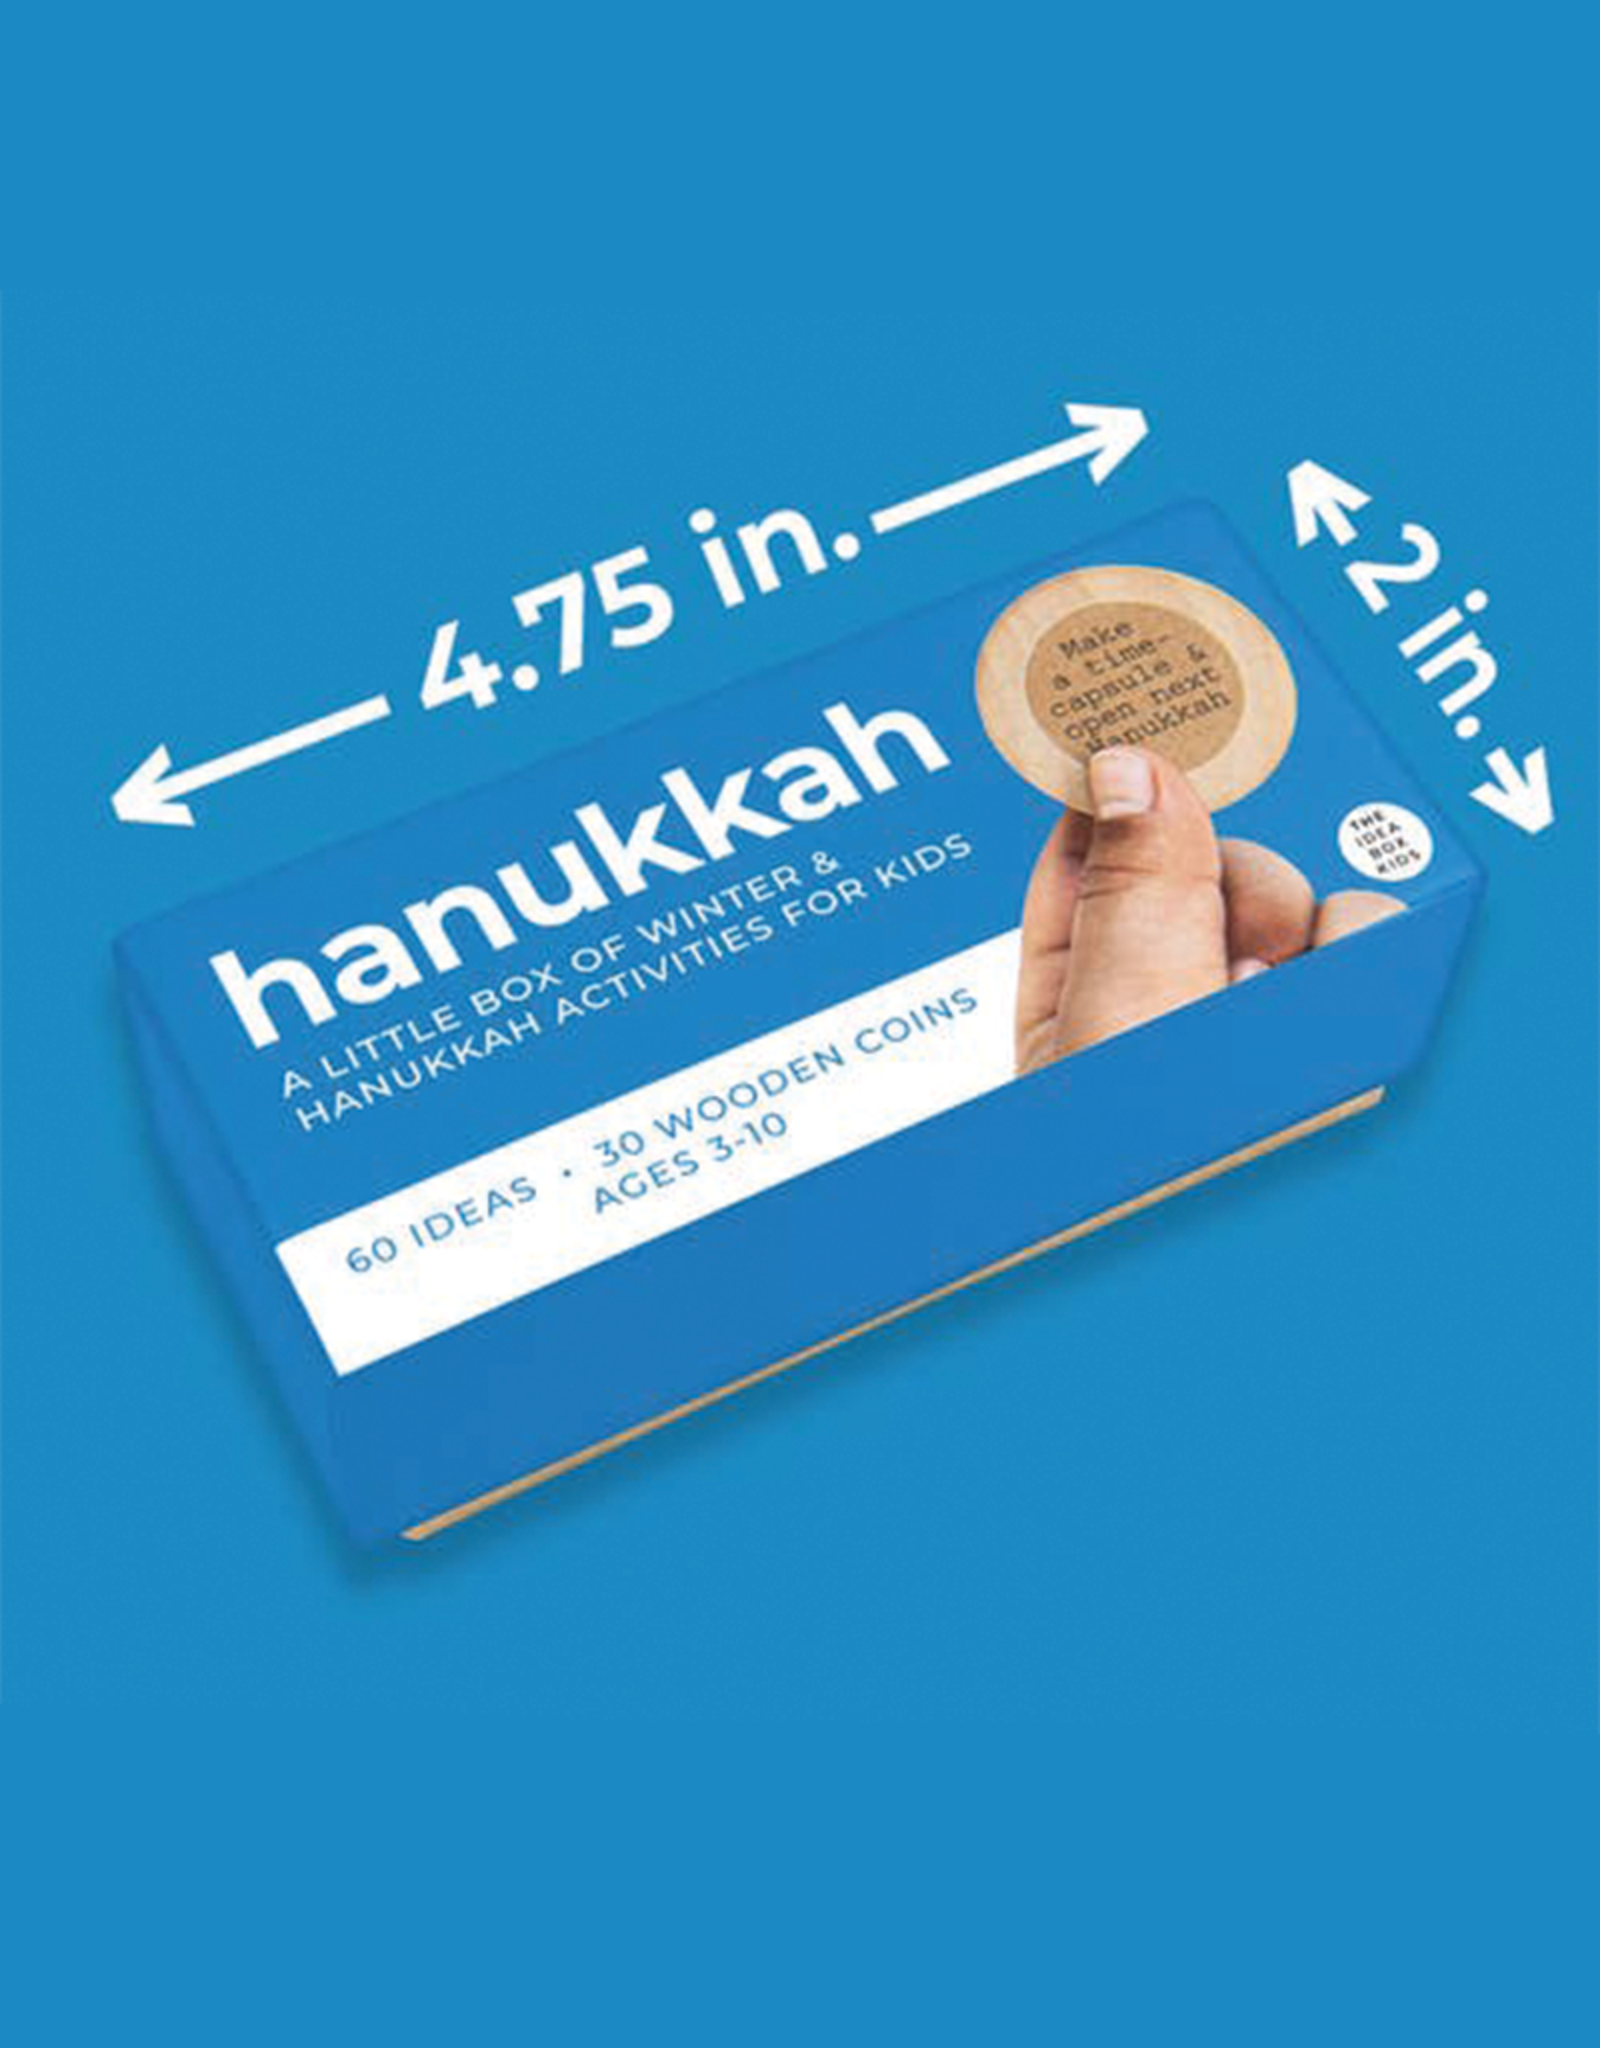 Hanukkah Box for Kids